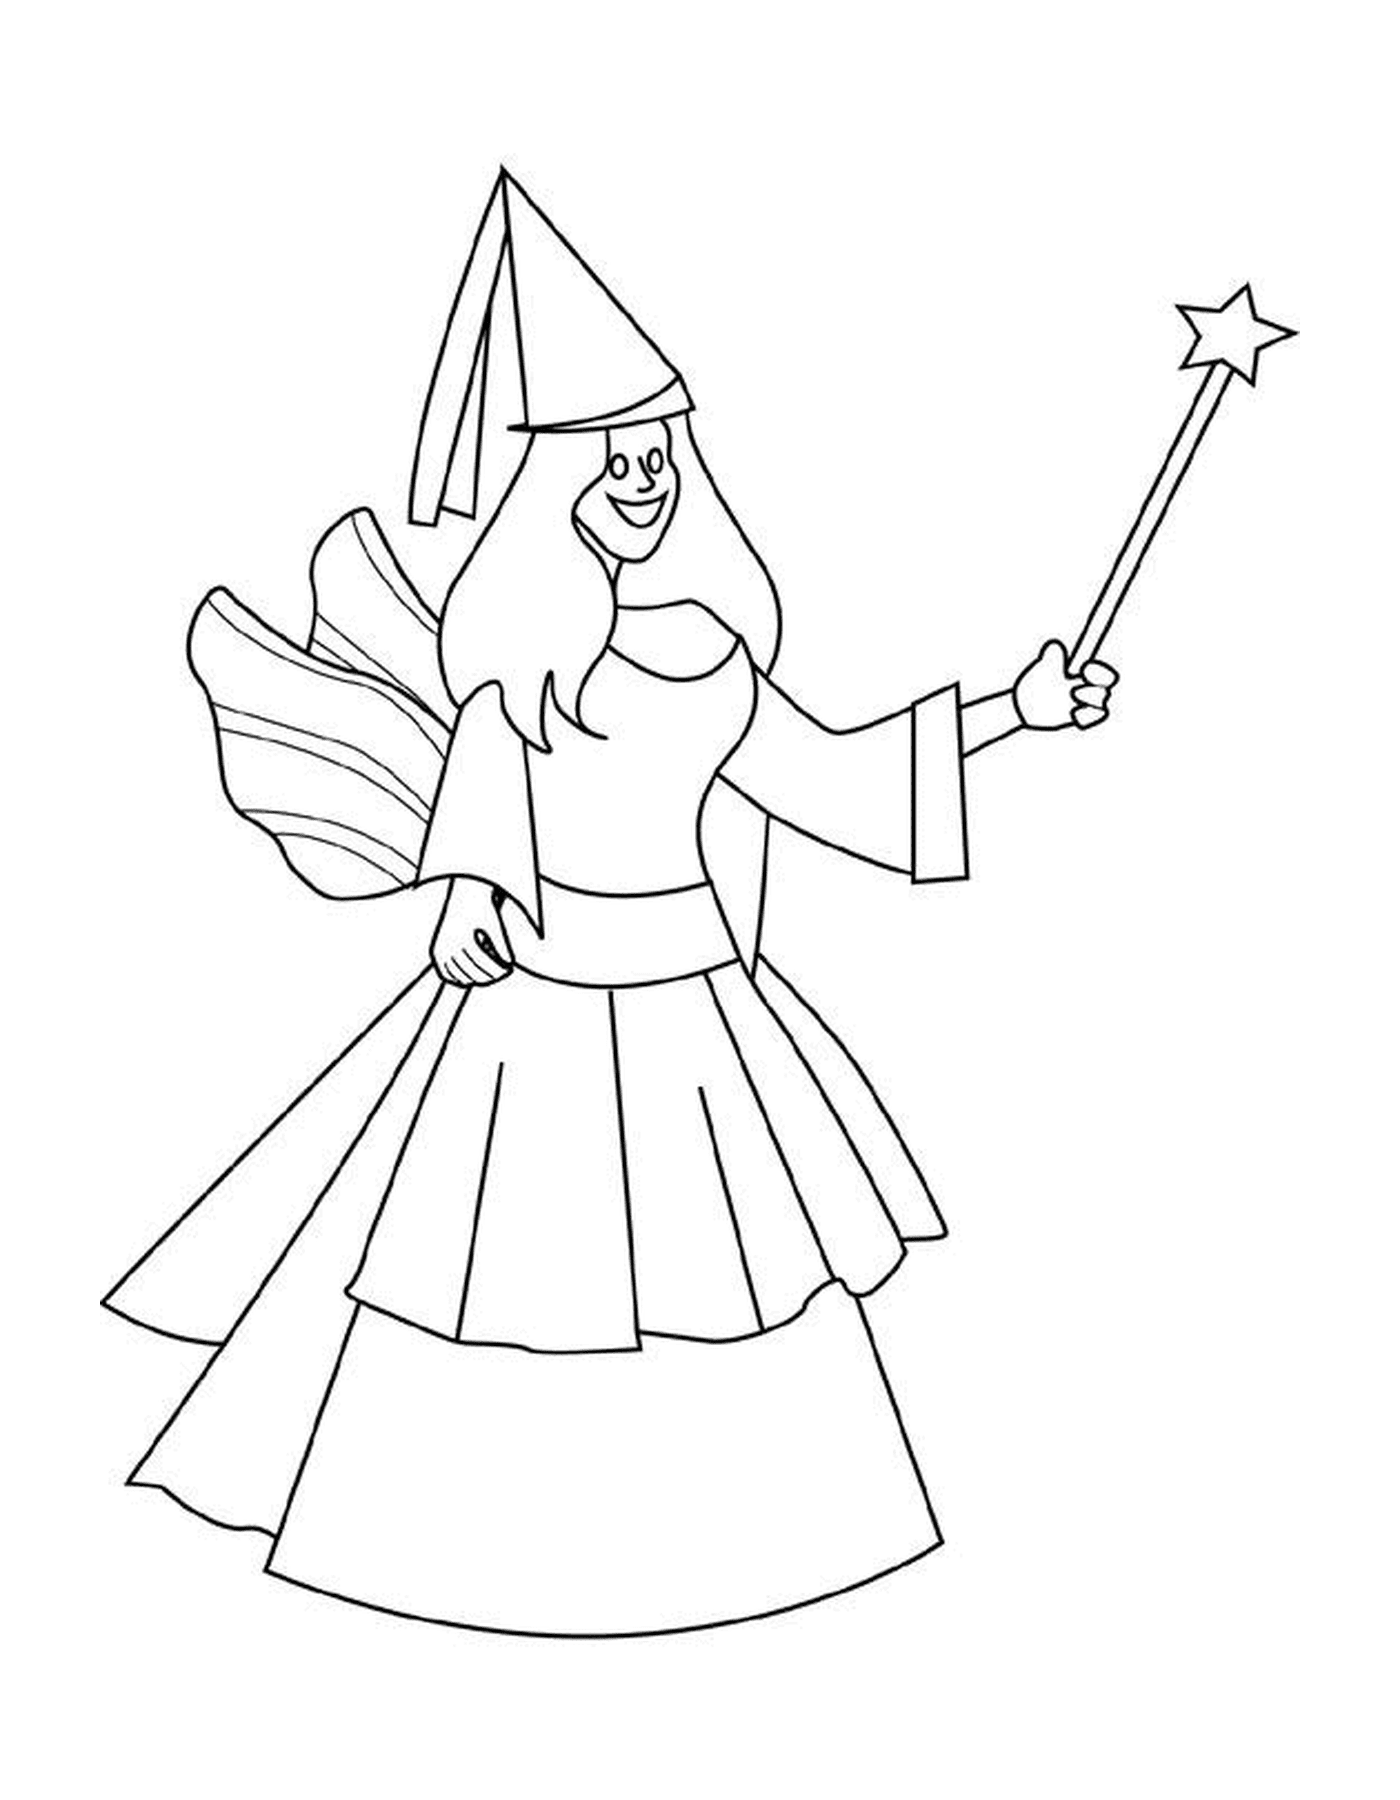   Une femme tenant une baguette magique 